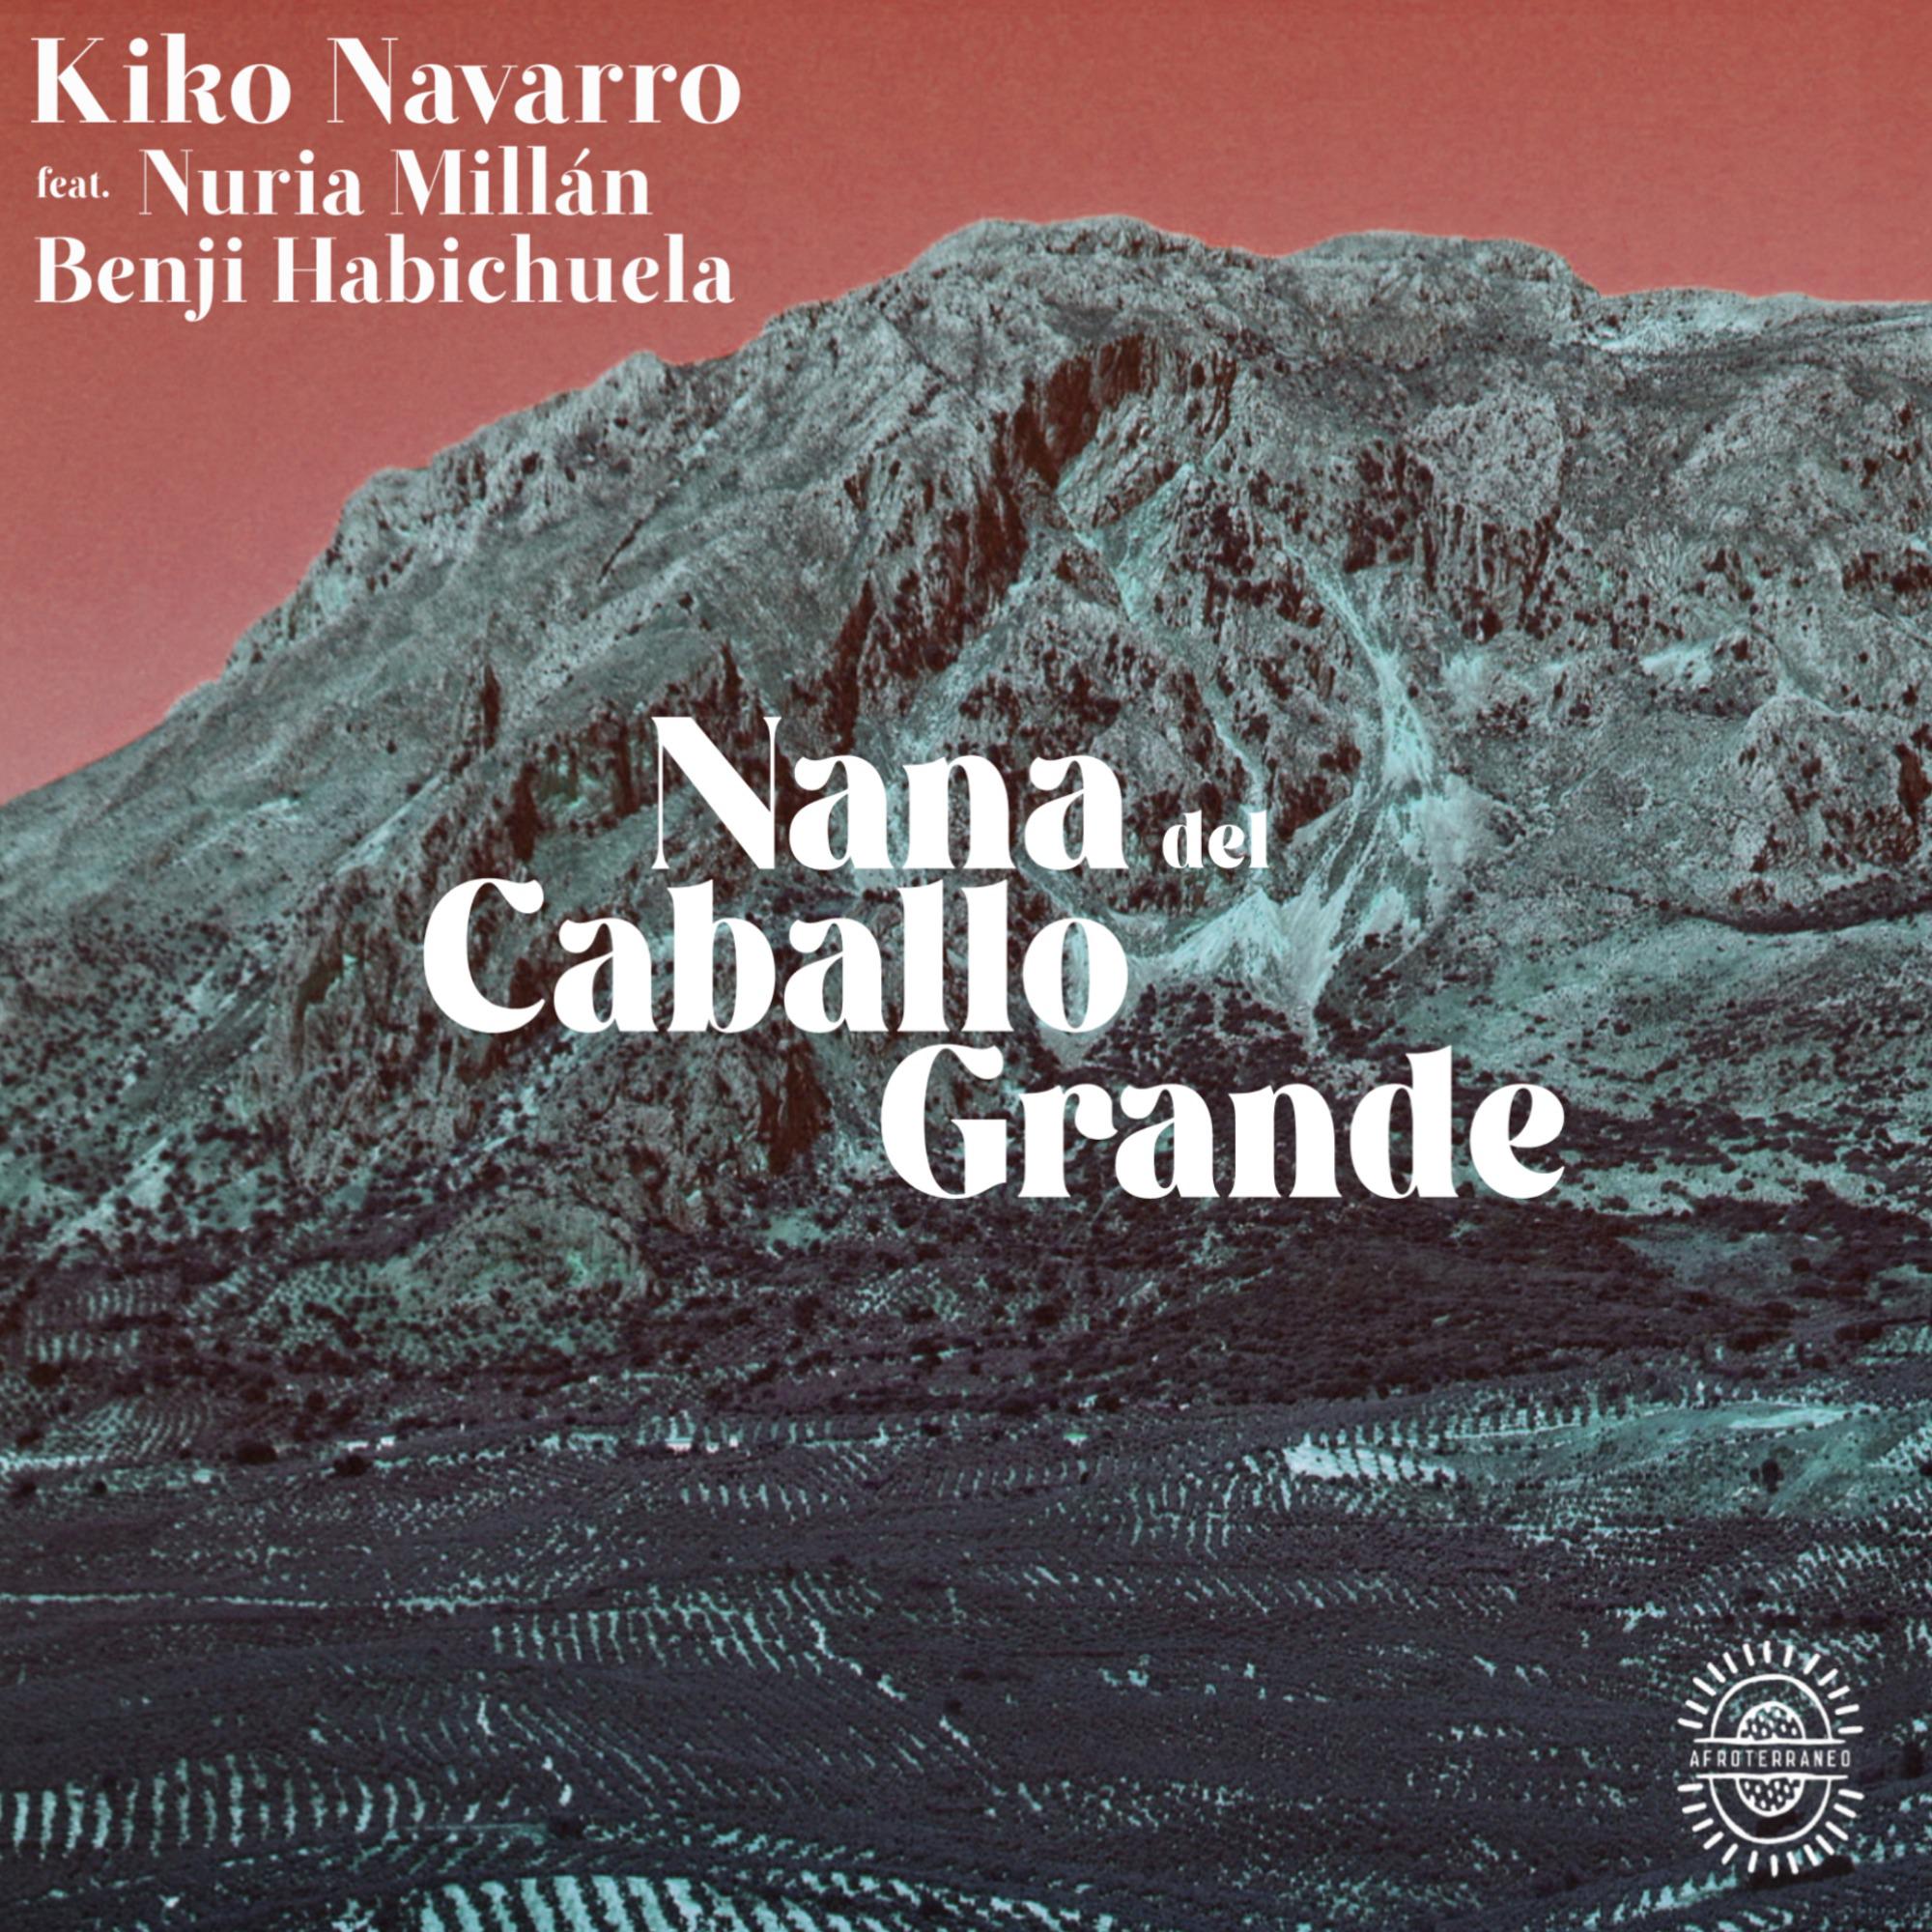 Kiko Navarro - Nana Del Caballo Grande (Extended)